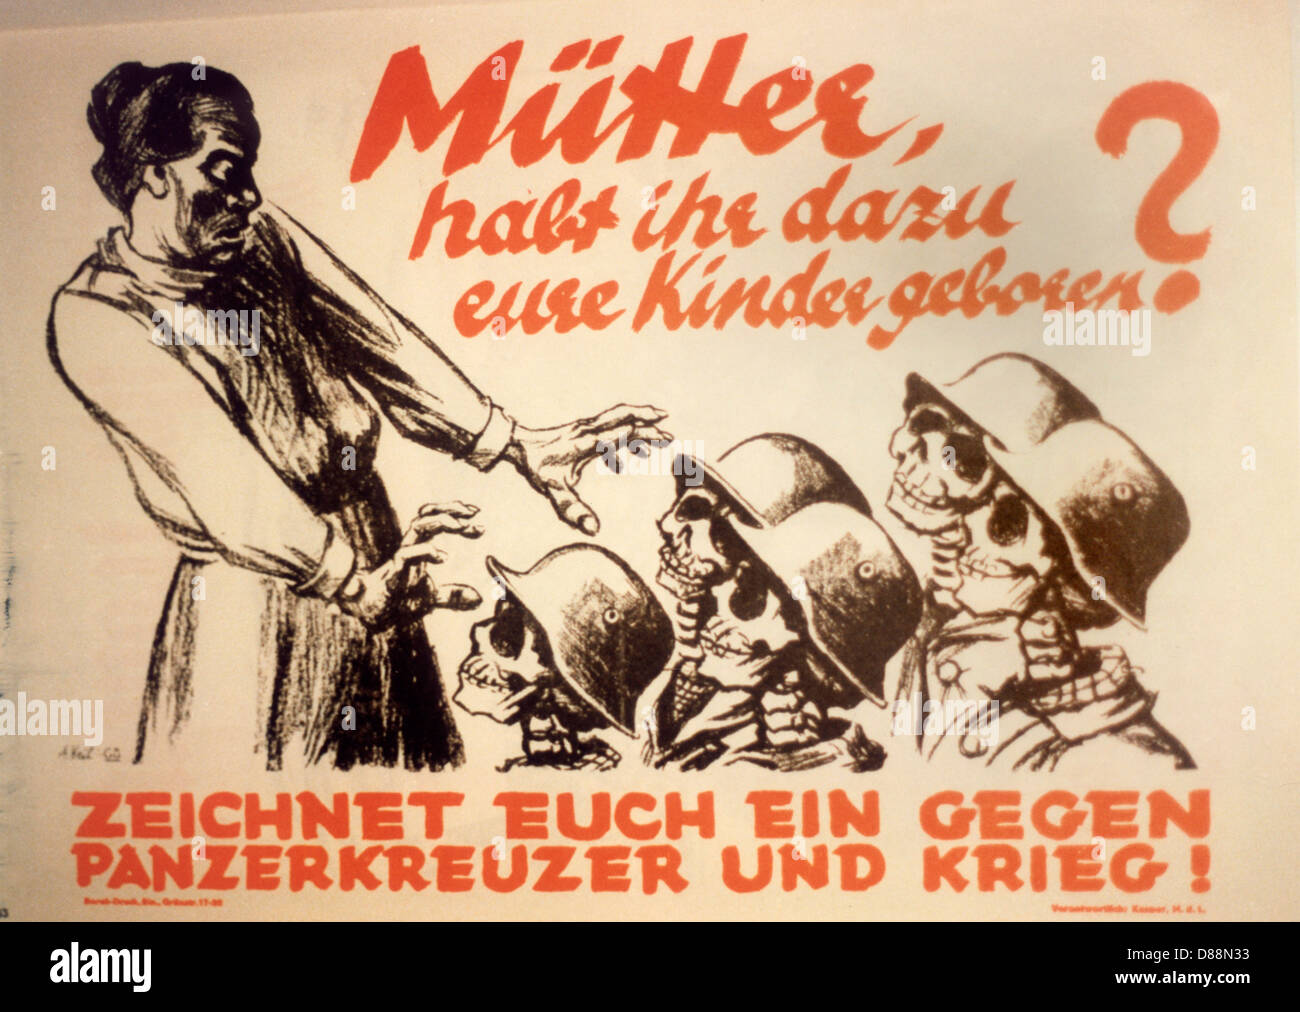 kpd-poster-anfang-der-1920er-jahre-d88n33.jpg